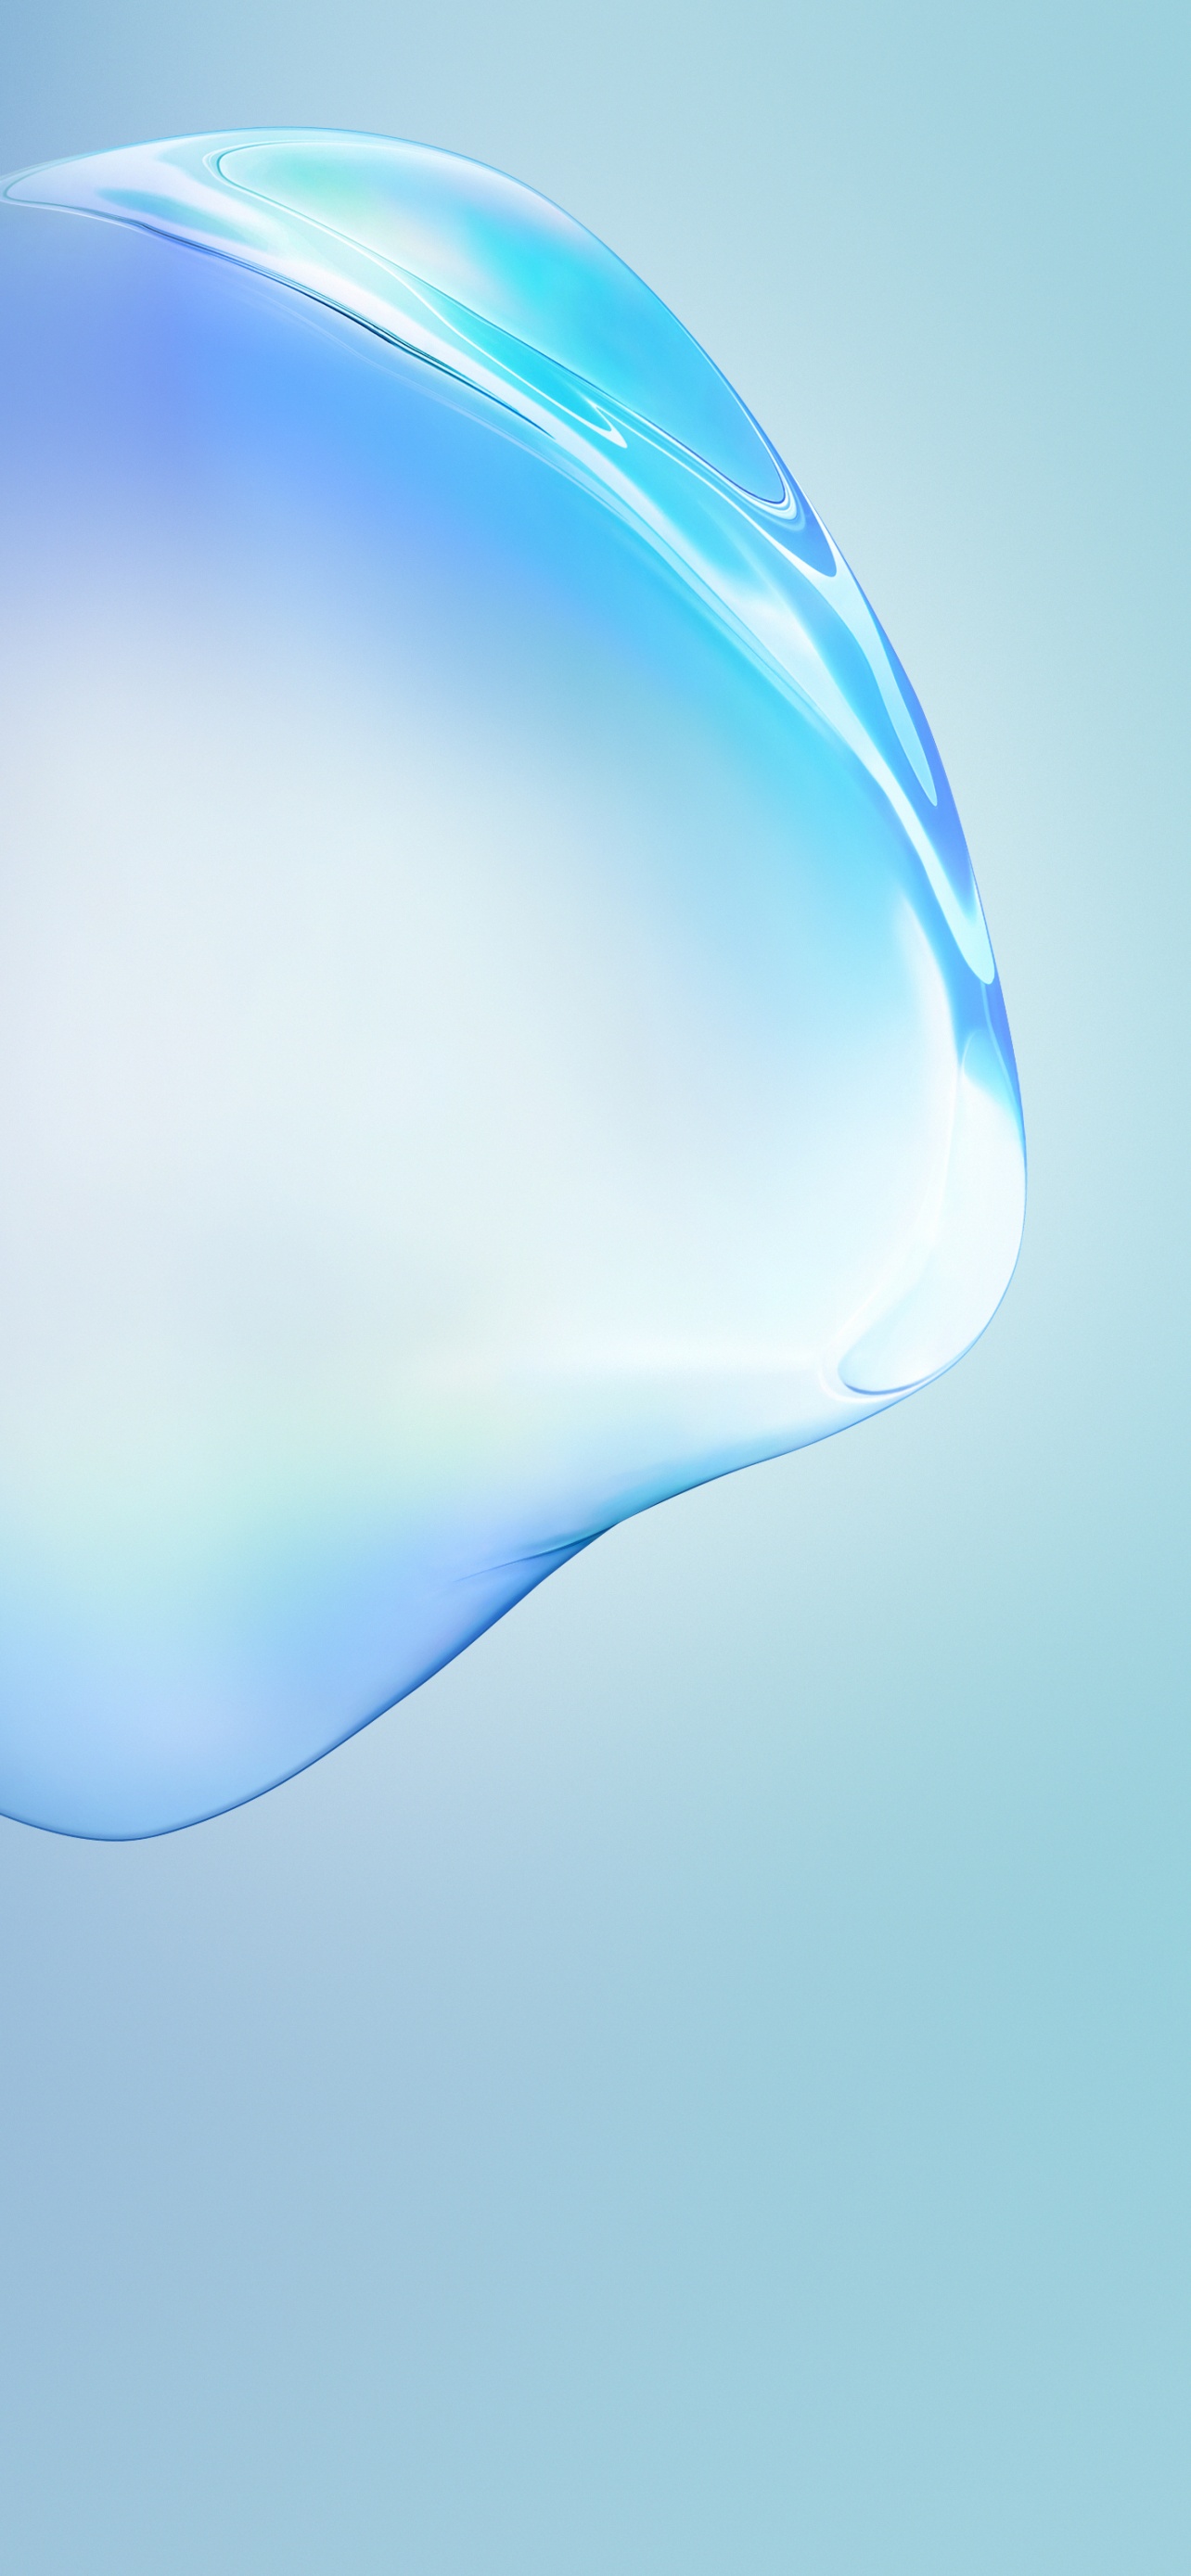 Hình nền Note10 4K, Bubble, Blue, Stock, Abstract là sự kết hợp hoàn hảo giữa các kiểu hình nền. Với màu xanh dương thanh lịch, hiệu ứng bong bóng tạo ra sự sống động và các mẫu hoa văn khác nhau, các hình nền này sẽ khiến điện thoại của bạn trông đẹp hơn bao giờ hết.